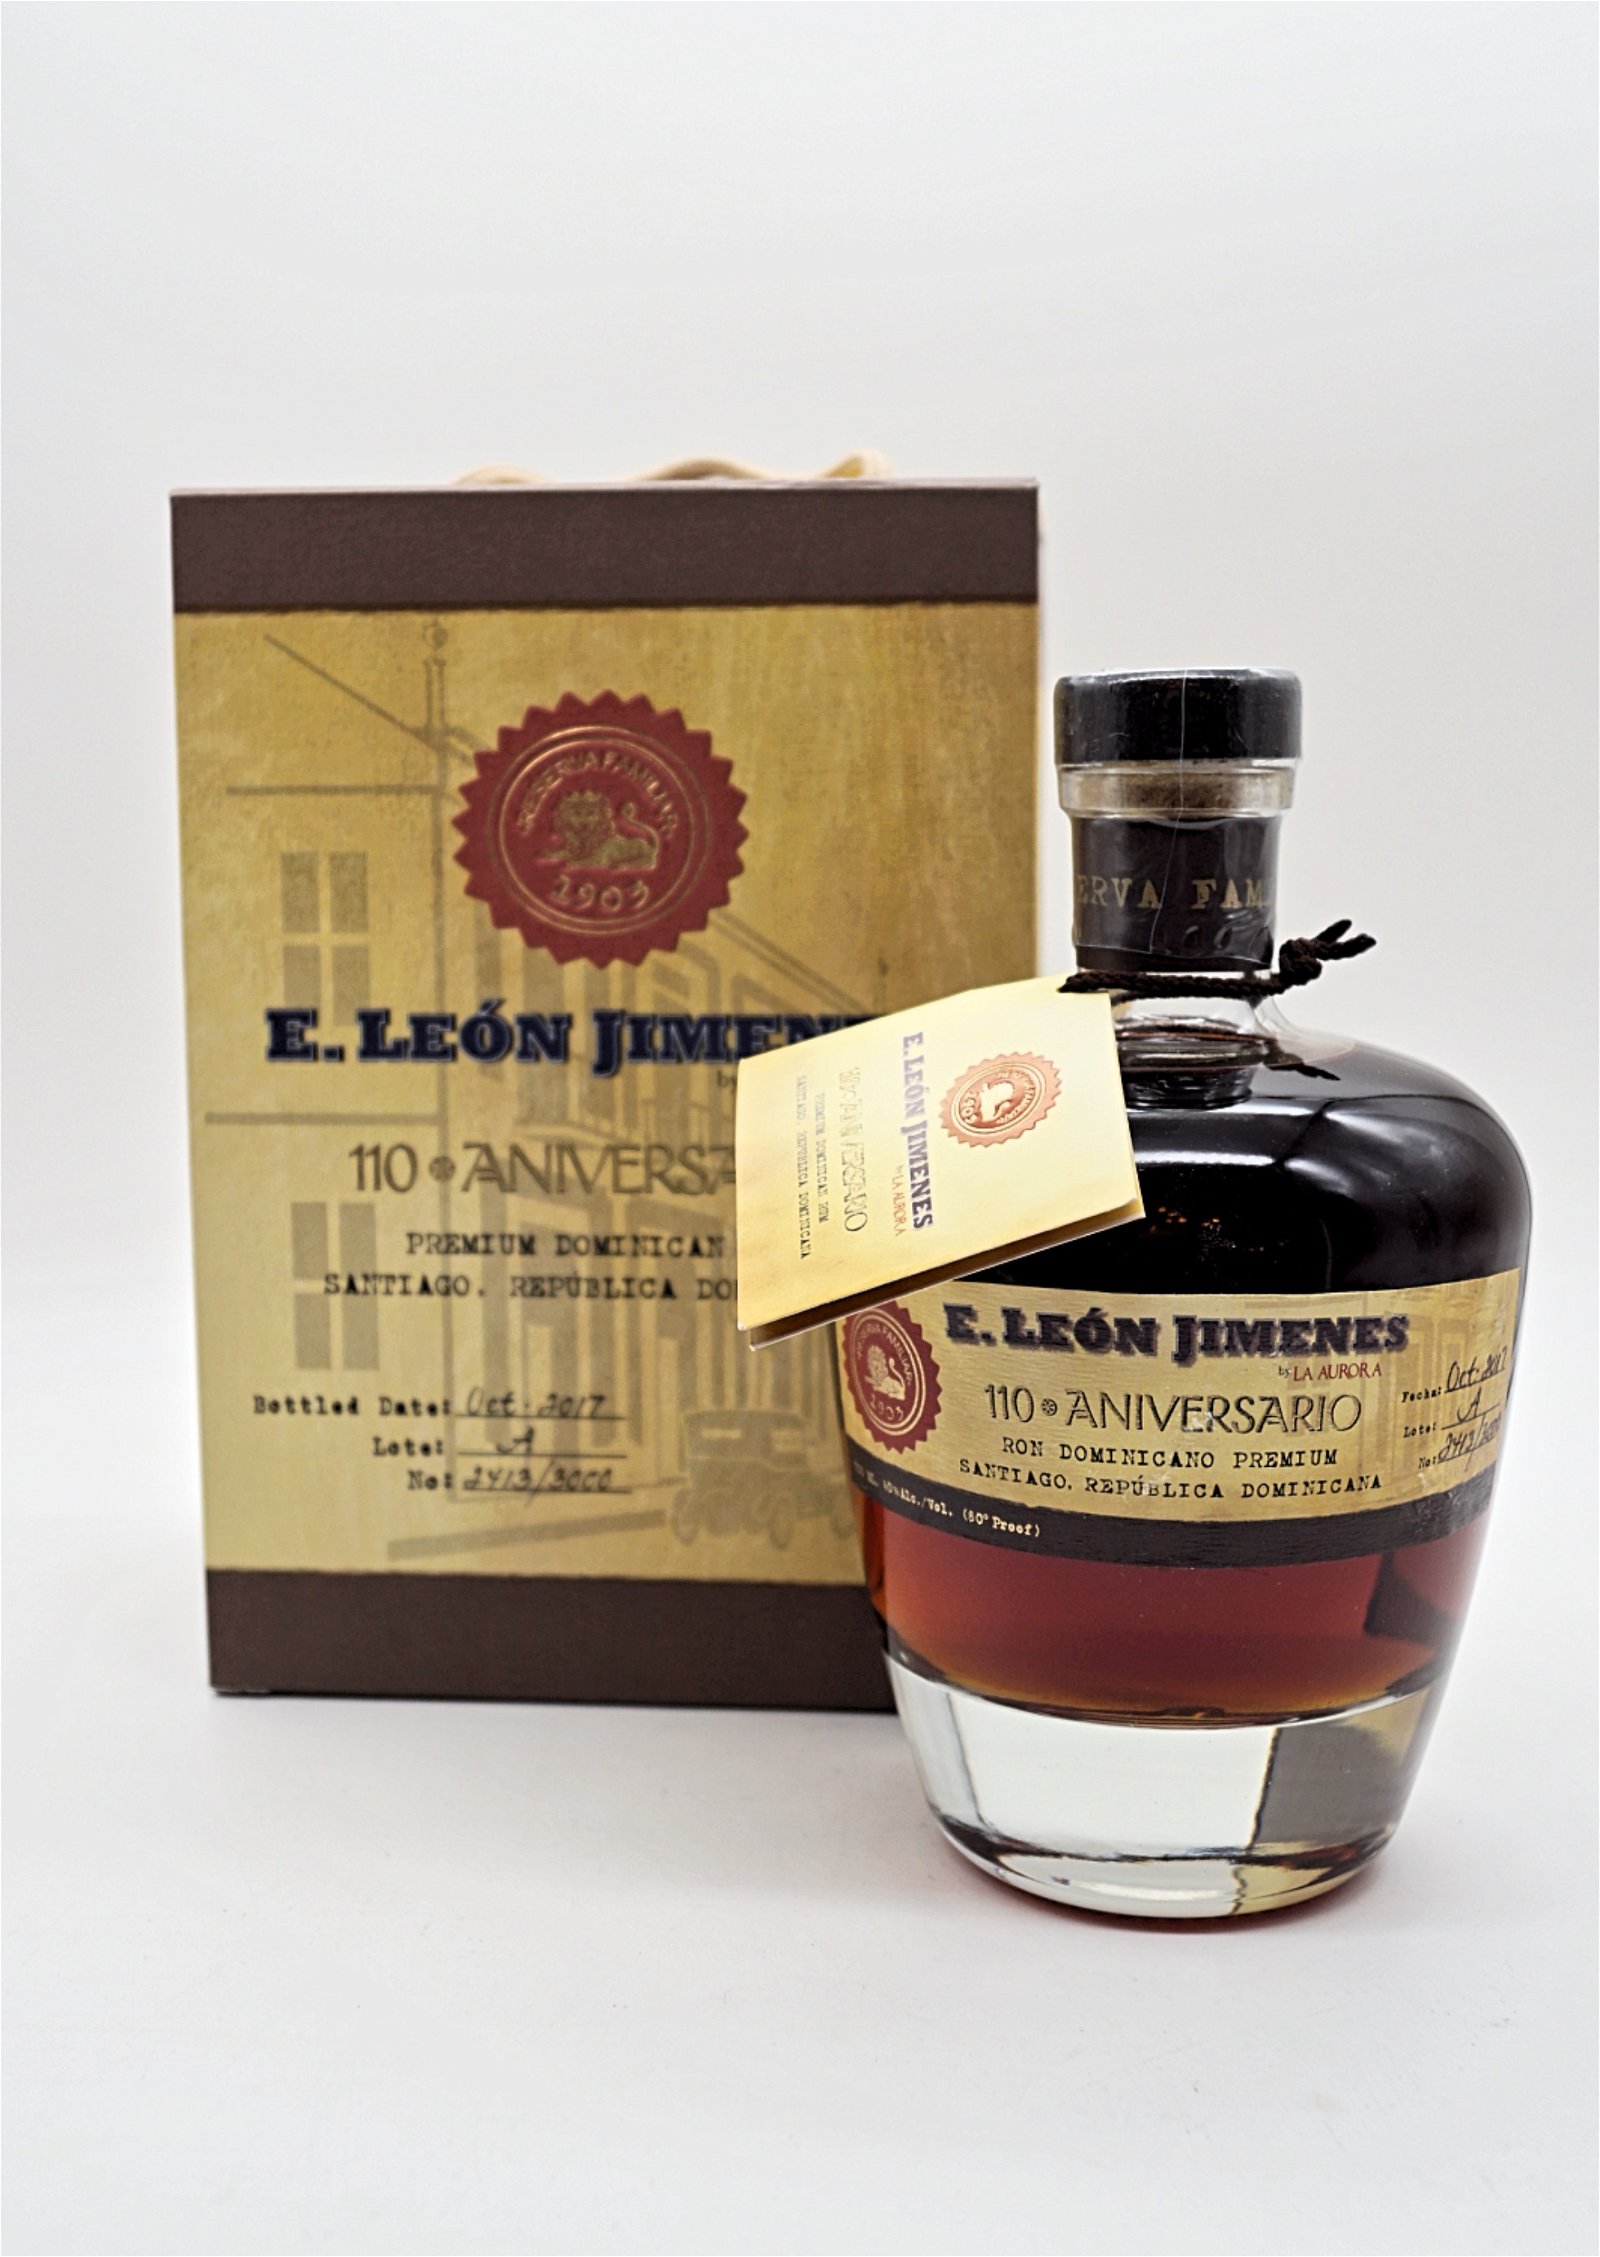 Leon Jimenes 110 Aniversario Dominican Premium Rum by La Aurora